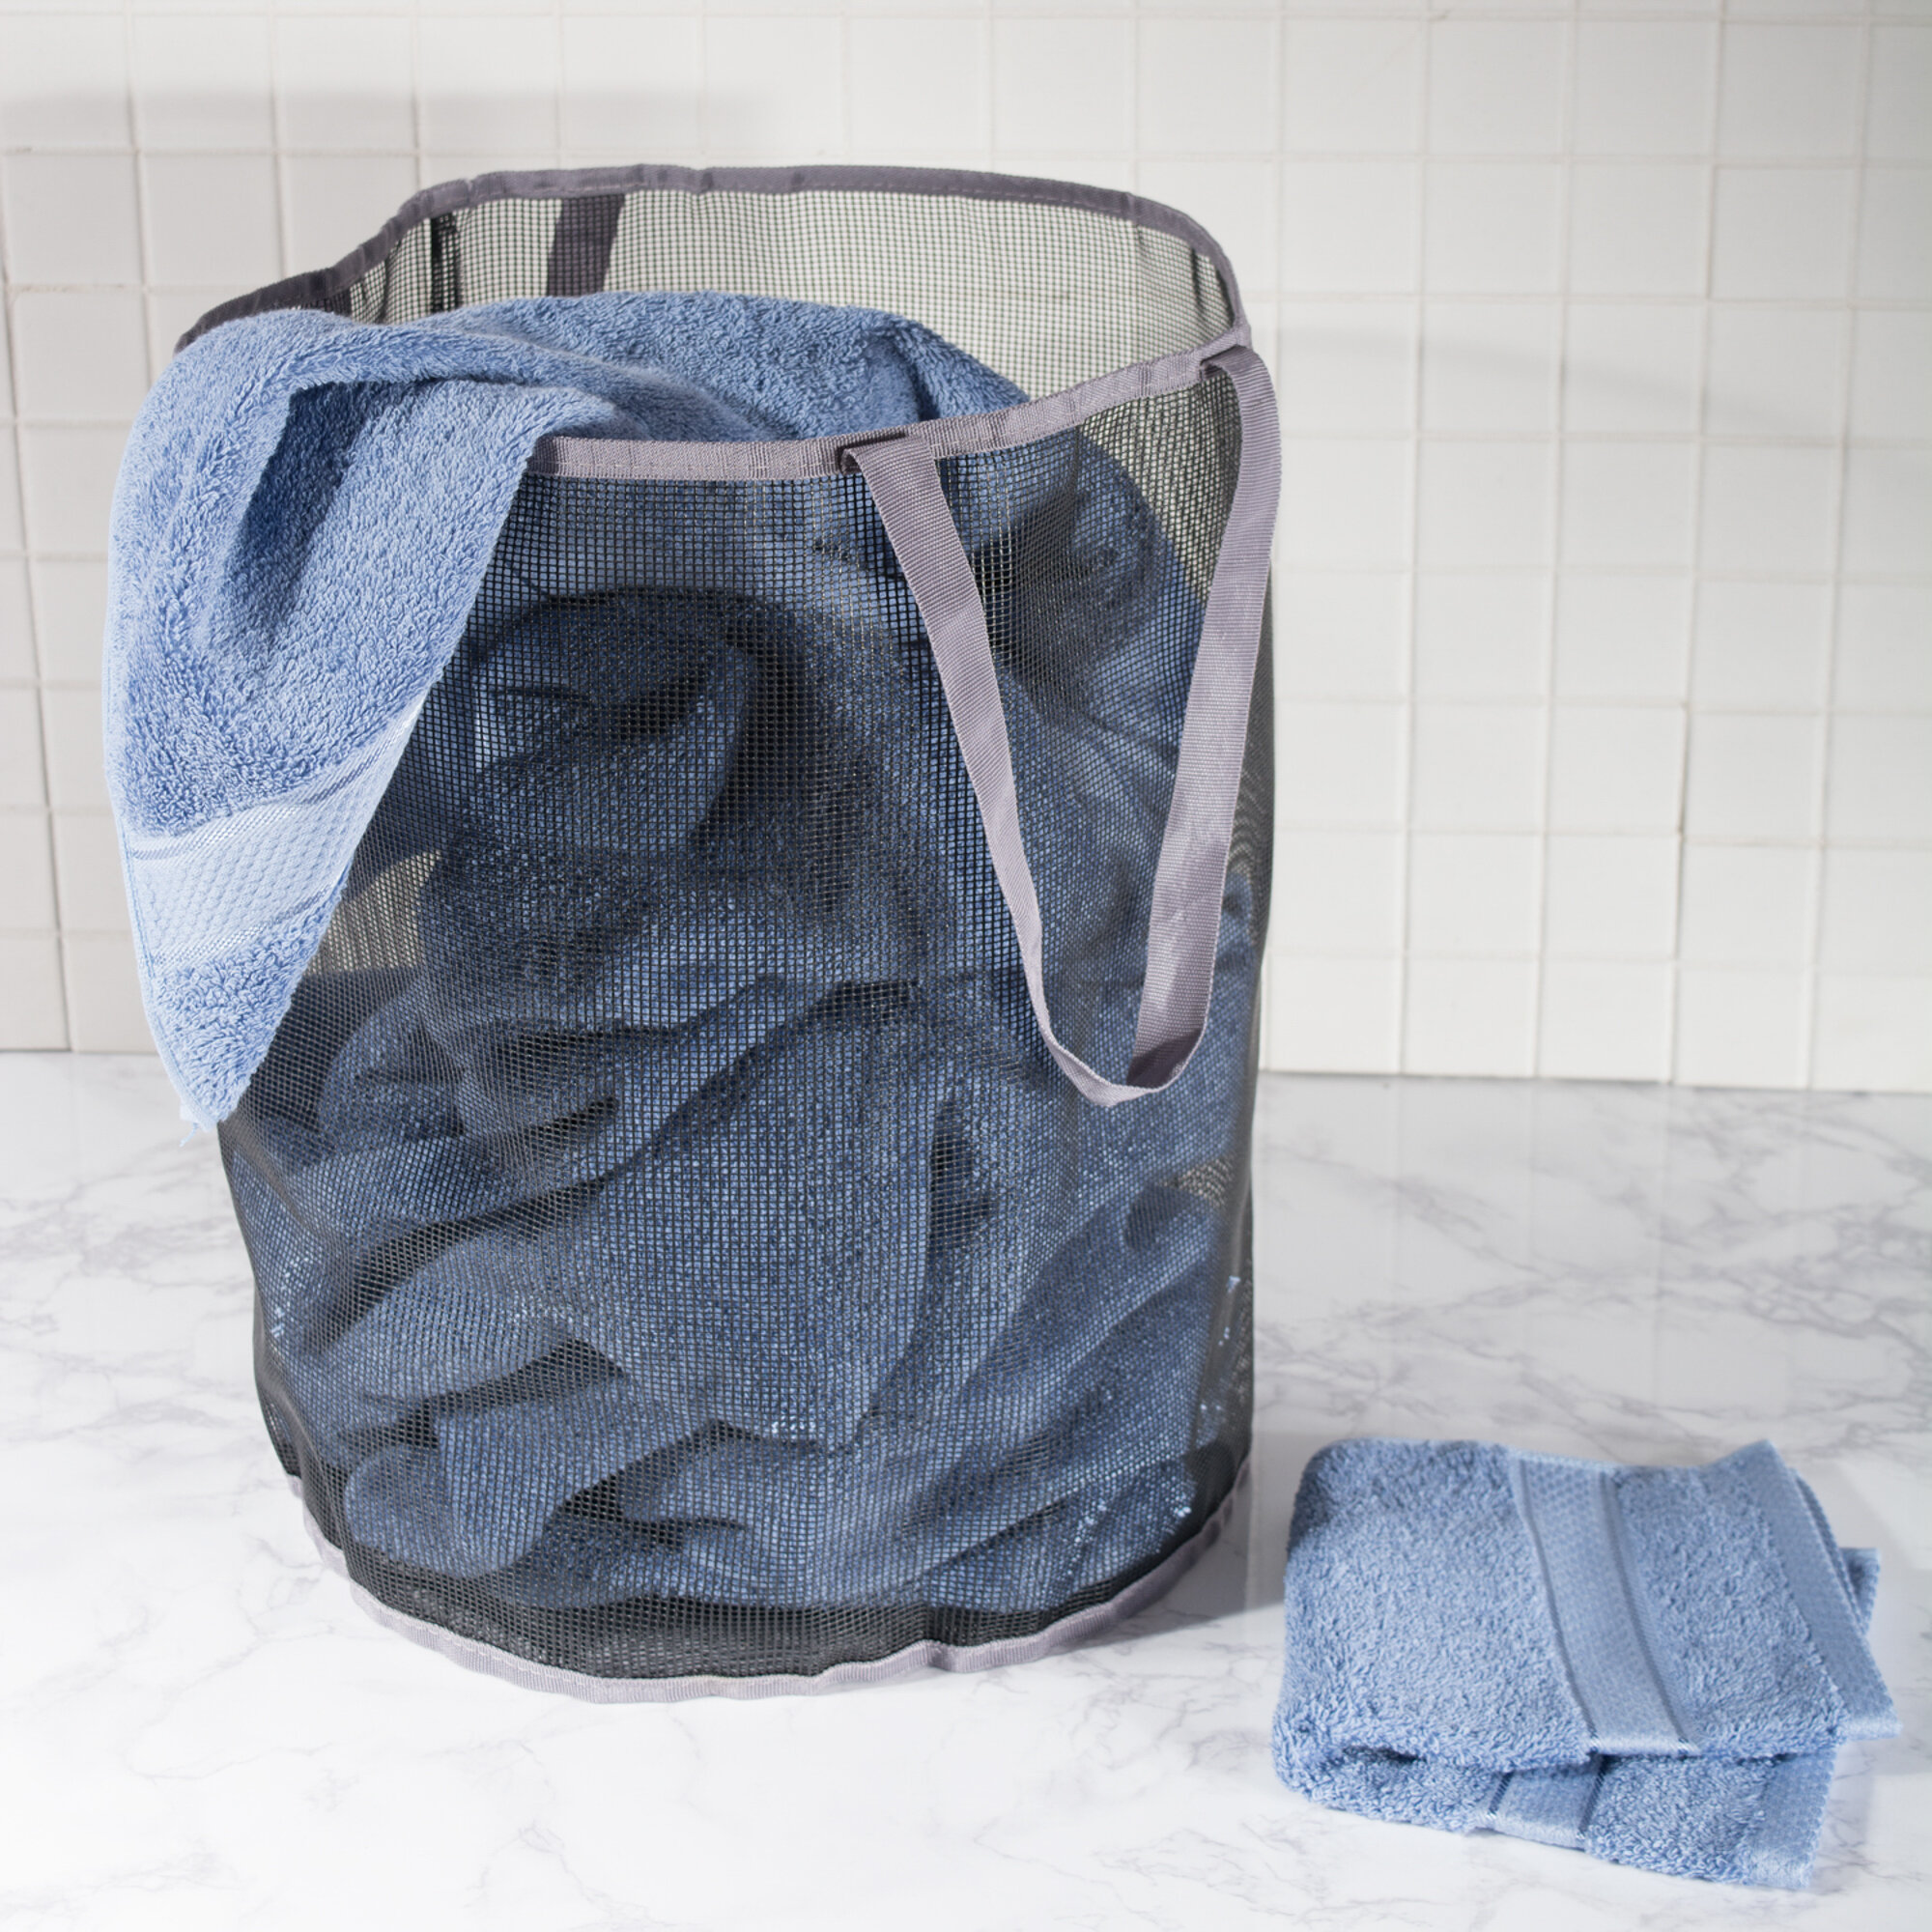 Wayfair Basics® Shoulder Strap Pop Up Laundry Hamper & Reviews